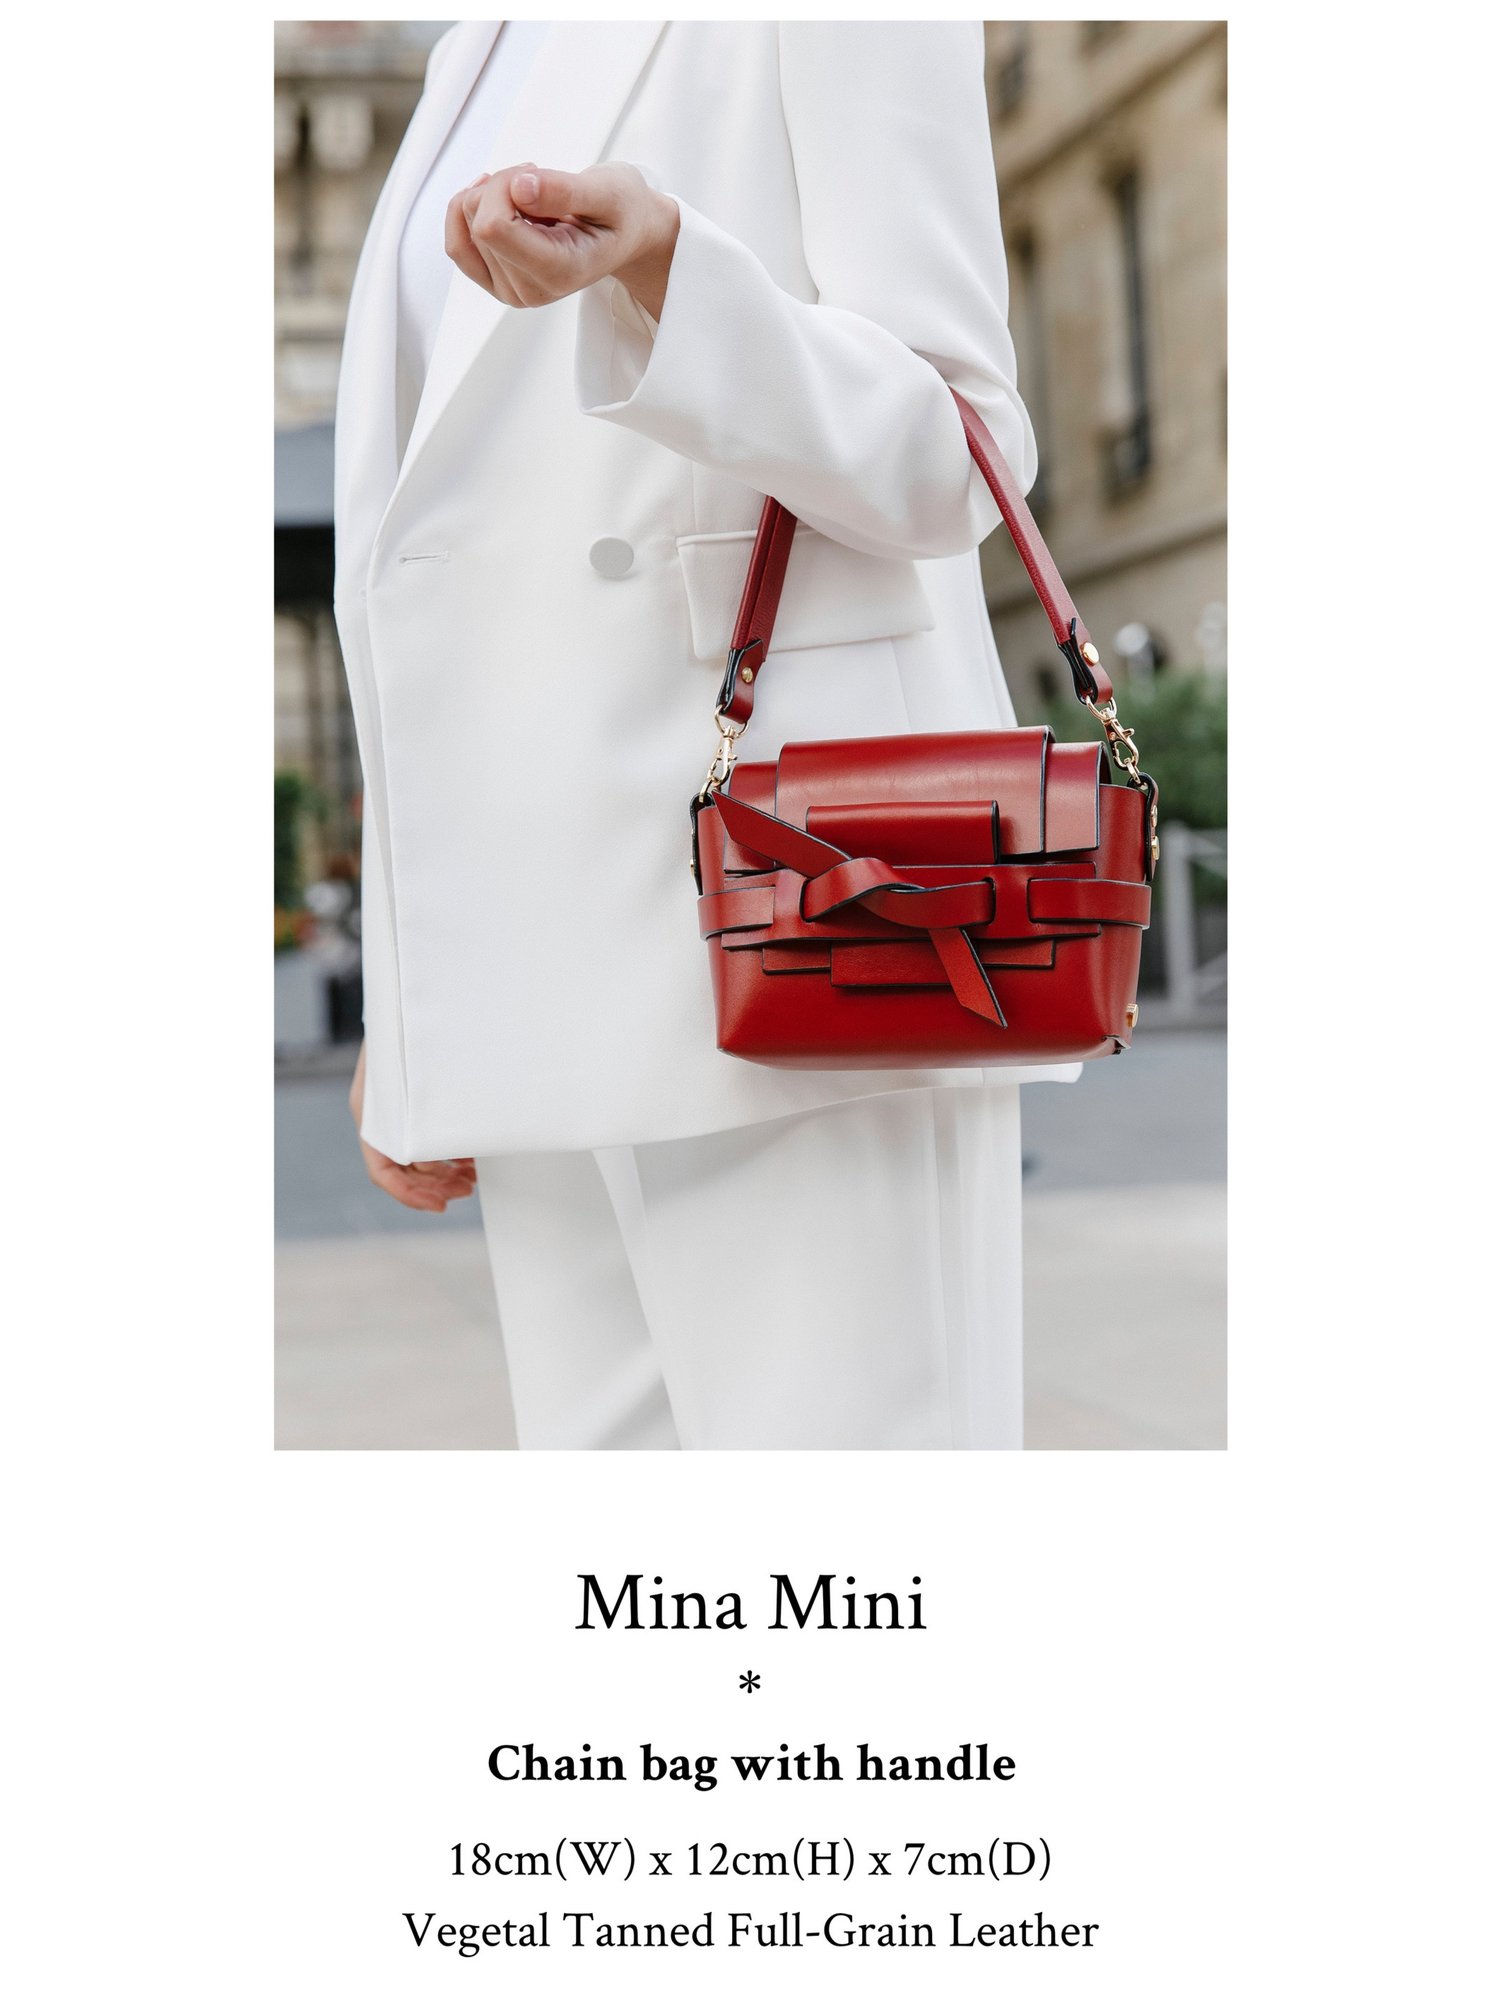 Design your own Mina Mini